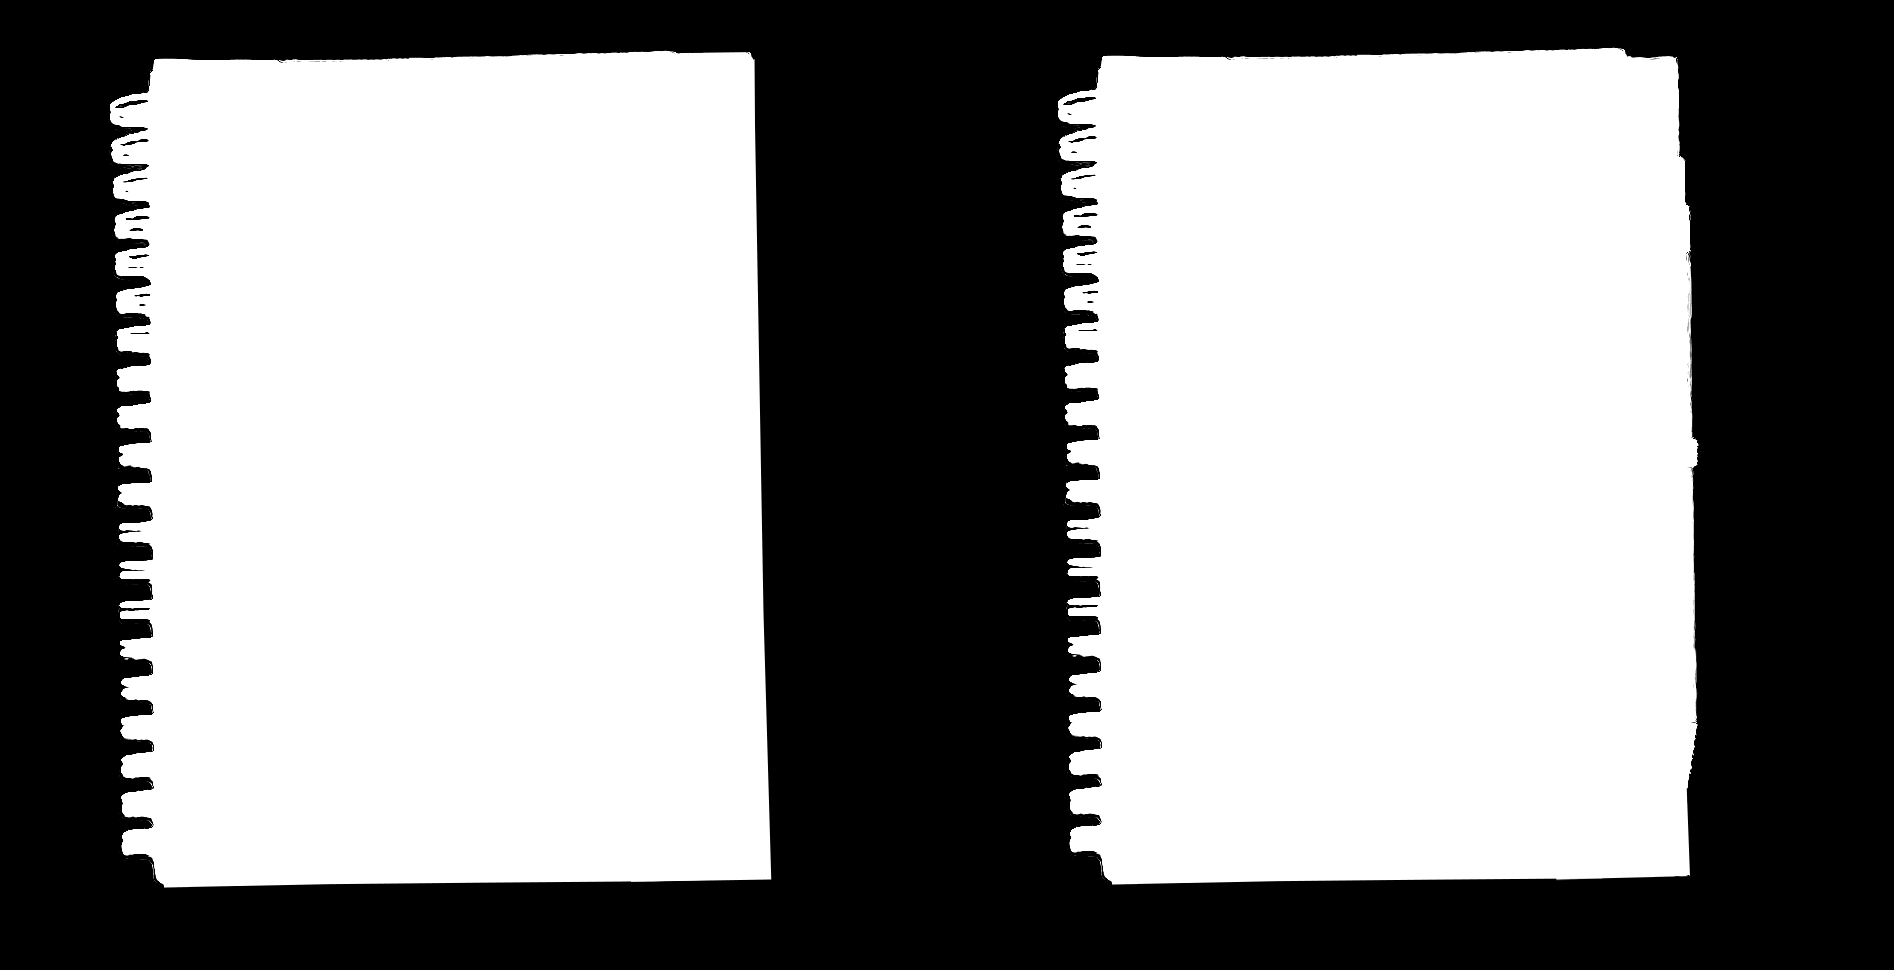 eu w kolorze białym na czerwonym tle (Pantone 485C), na długopisie nadruk tampodrukiem w kolorze czarnym, dwustronnie hasło EKO TYEKO LUBLIN, www.odpady.lublin.